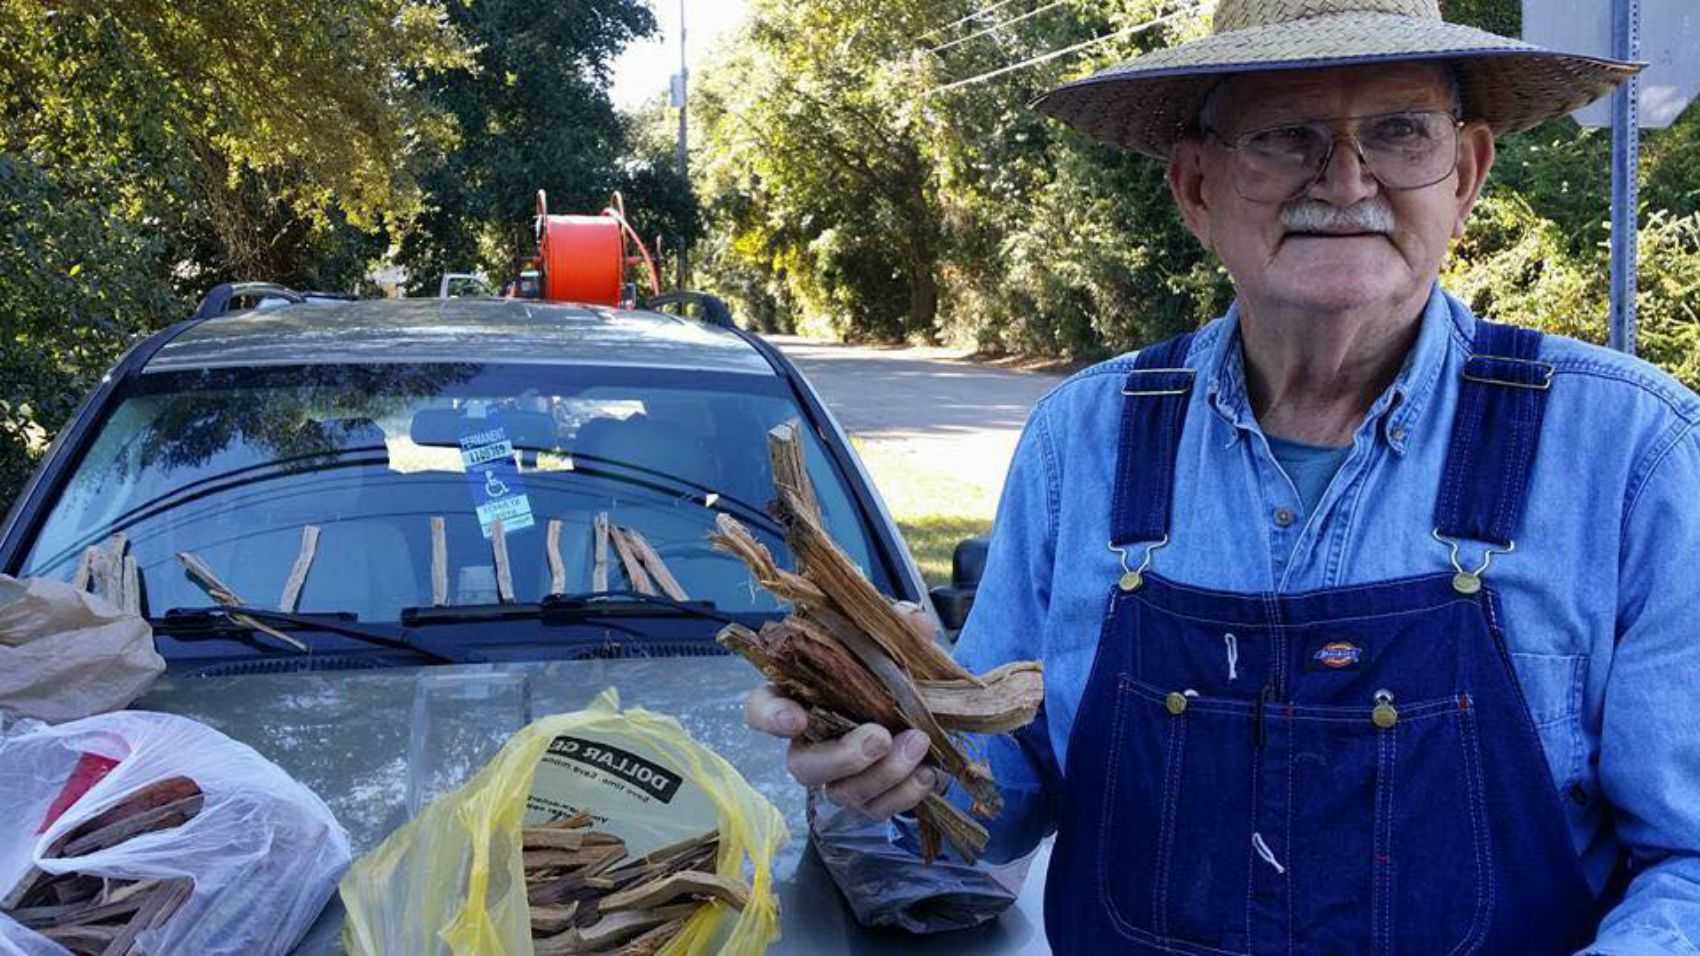 La trista història d'un home de 80 anys que venia llenya a la carretera